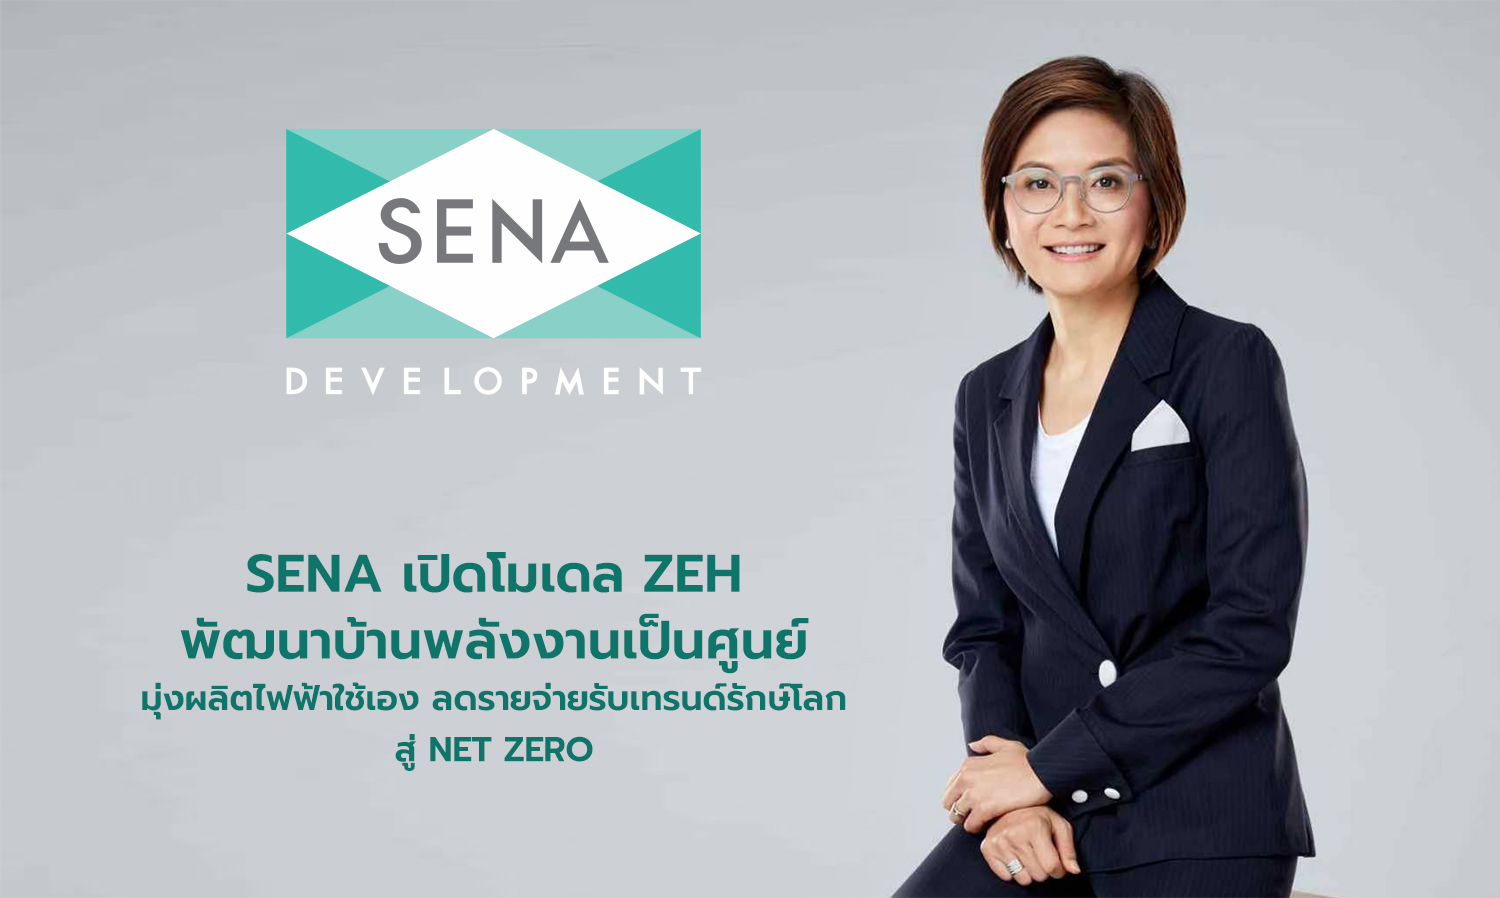 SENA เปิดโมเดล ZEH พัฒนาบ้านพลังงานเป็นศูนย์ มุ่งผลิตไฟฟ้าใช้เอง ลดรายจ่ายรับเทรนด์รักษ์โลกสู่ Net Zero